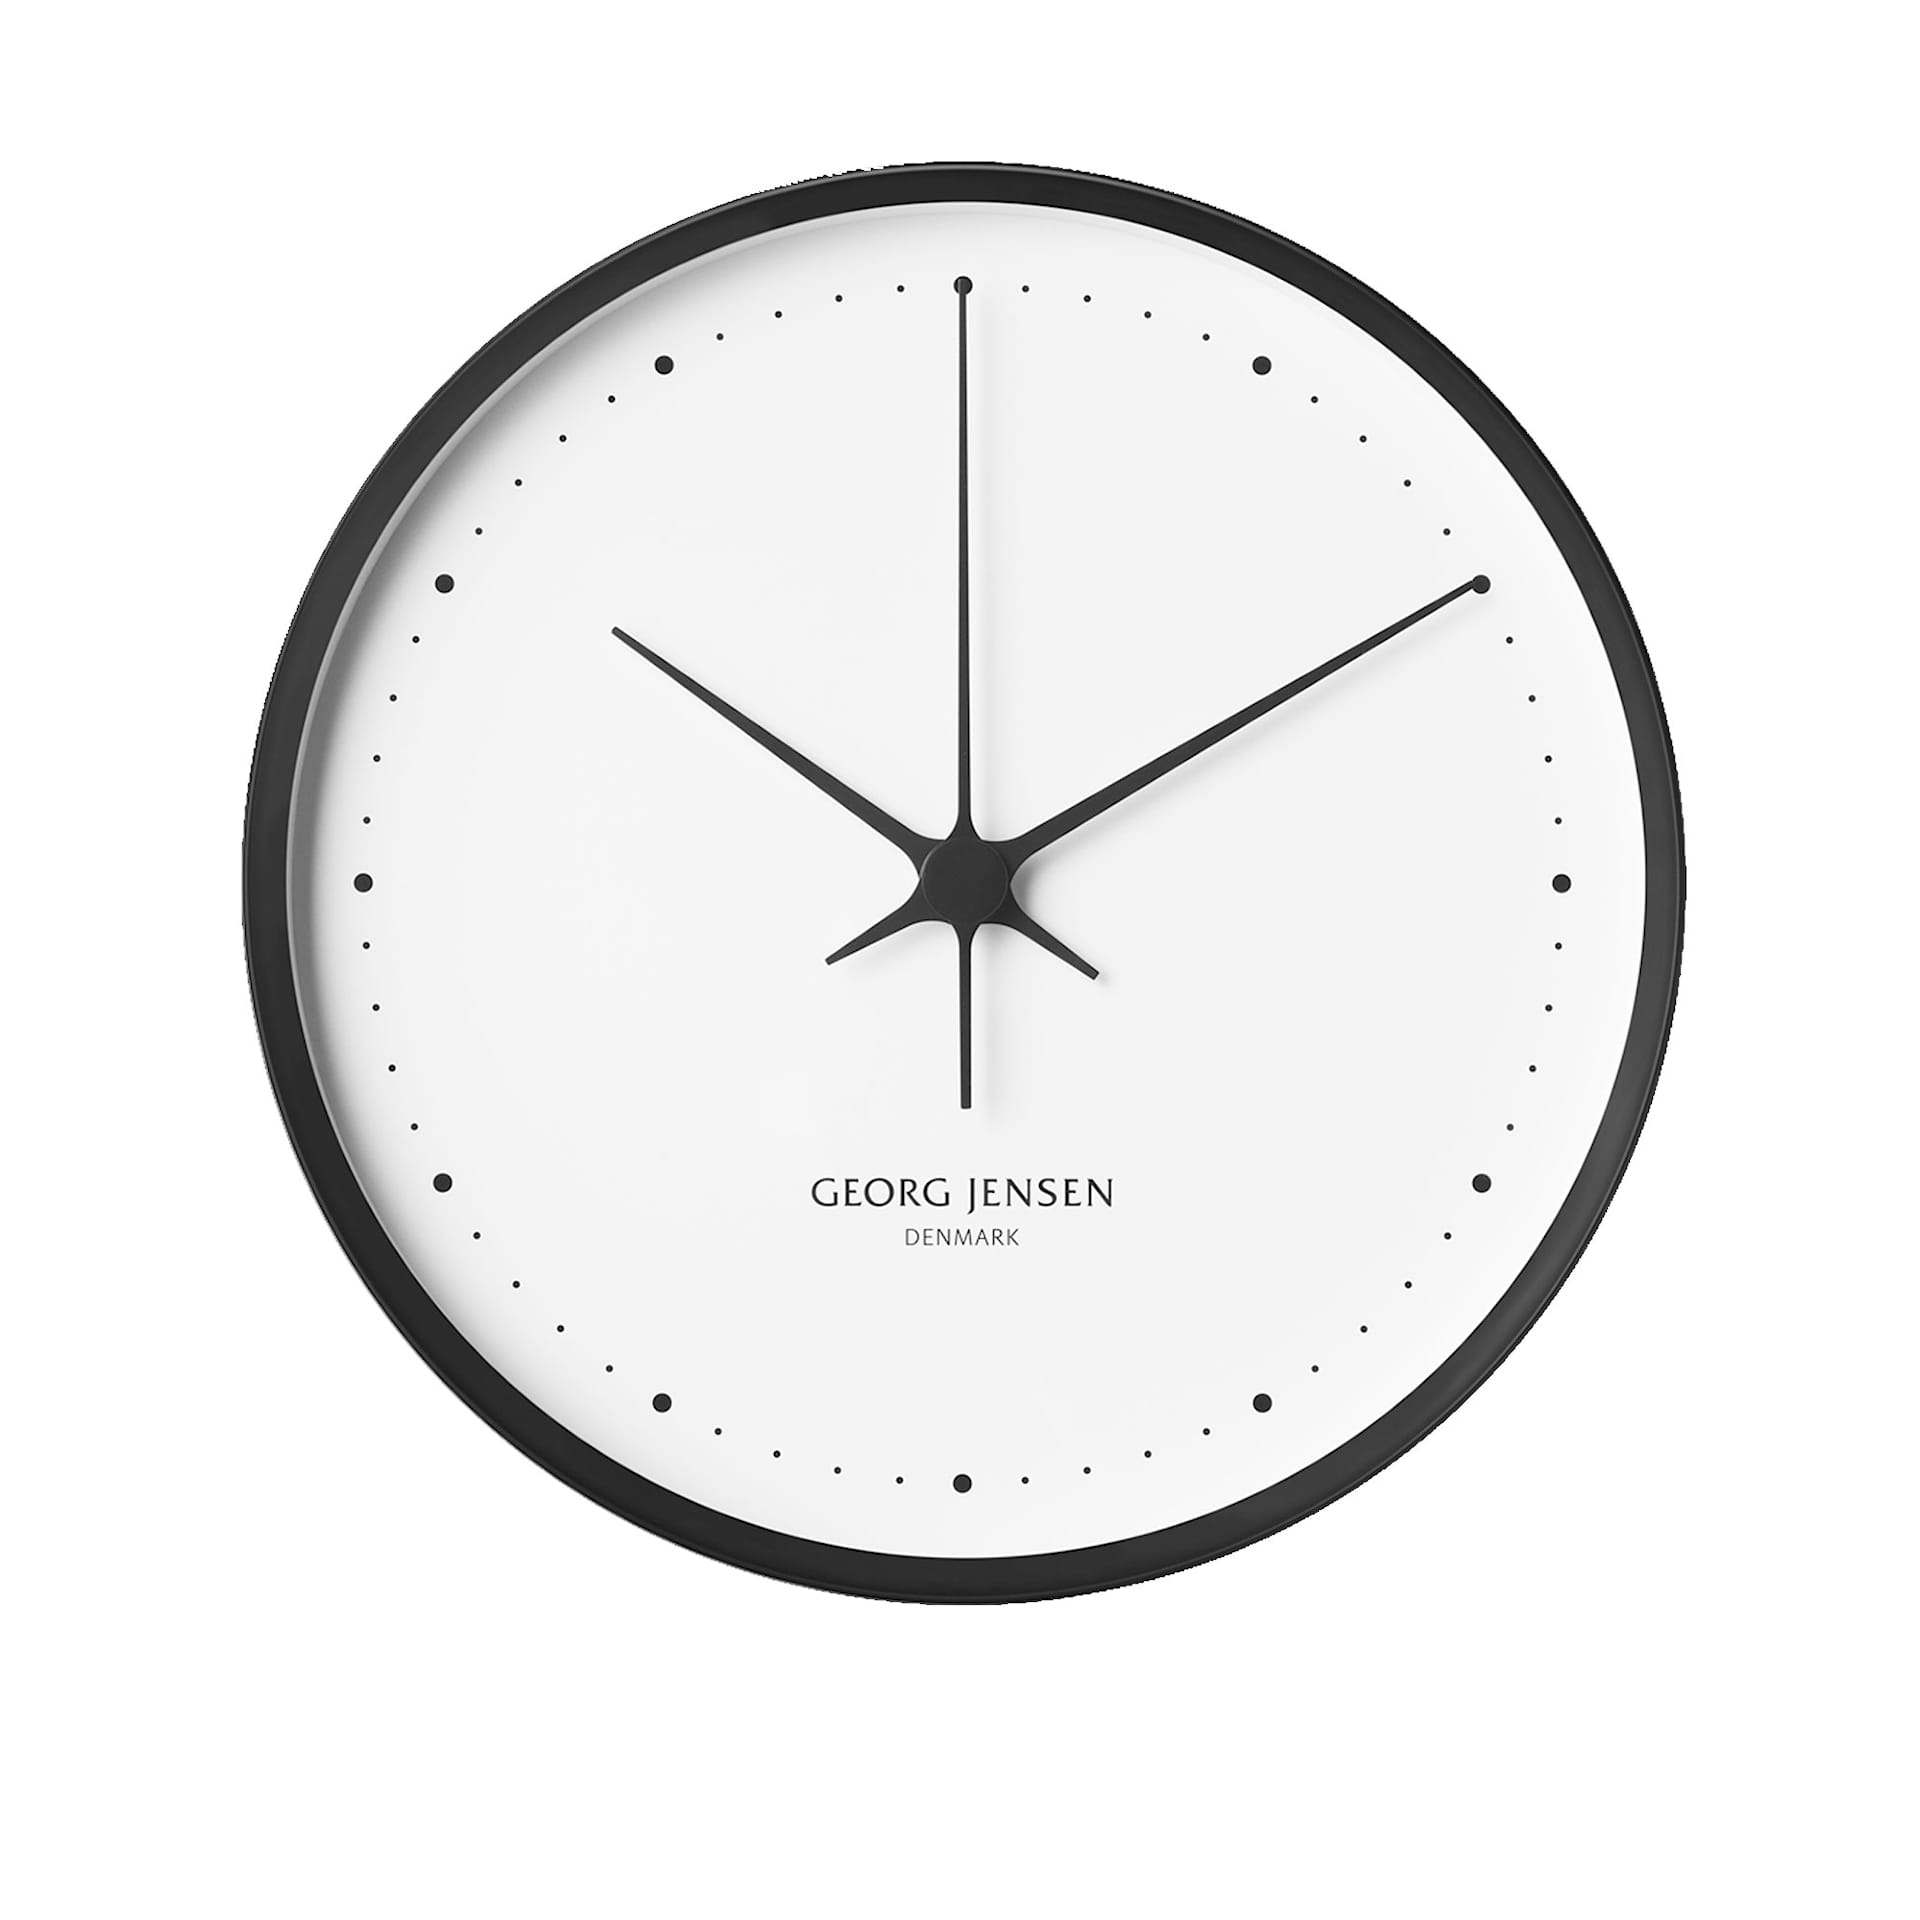 HK Clock Ø30 cm - Georg Jensen - NO GA